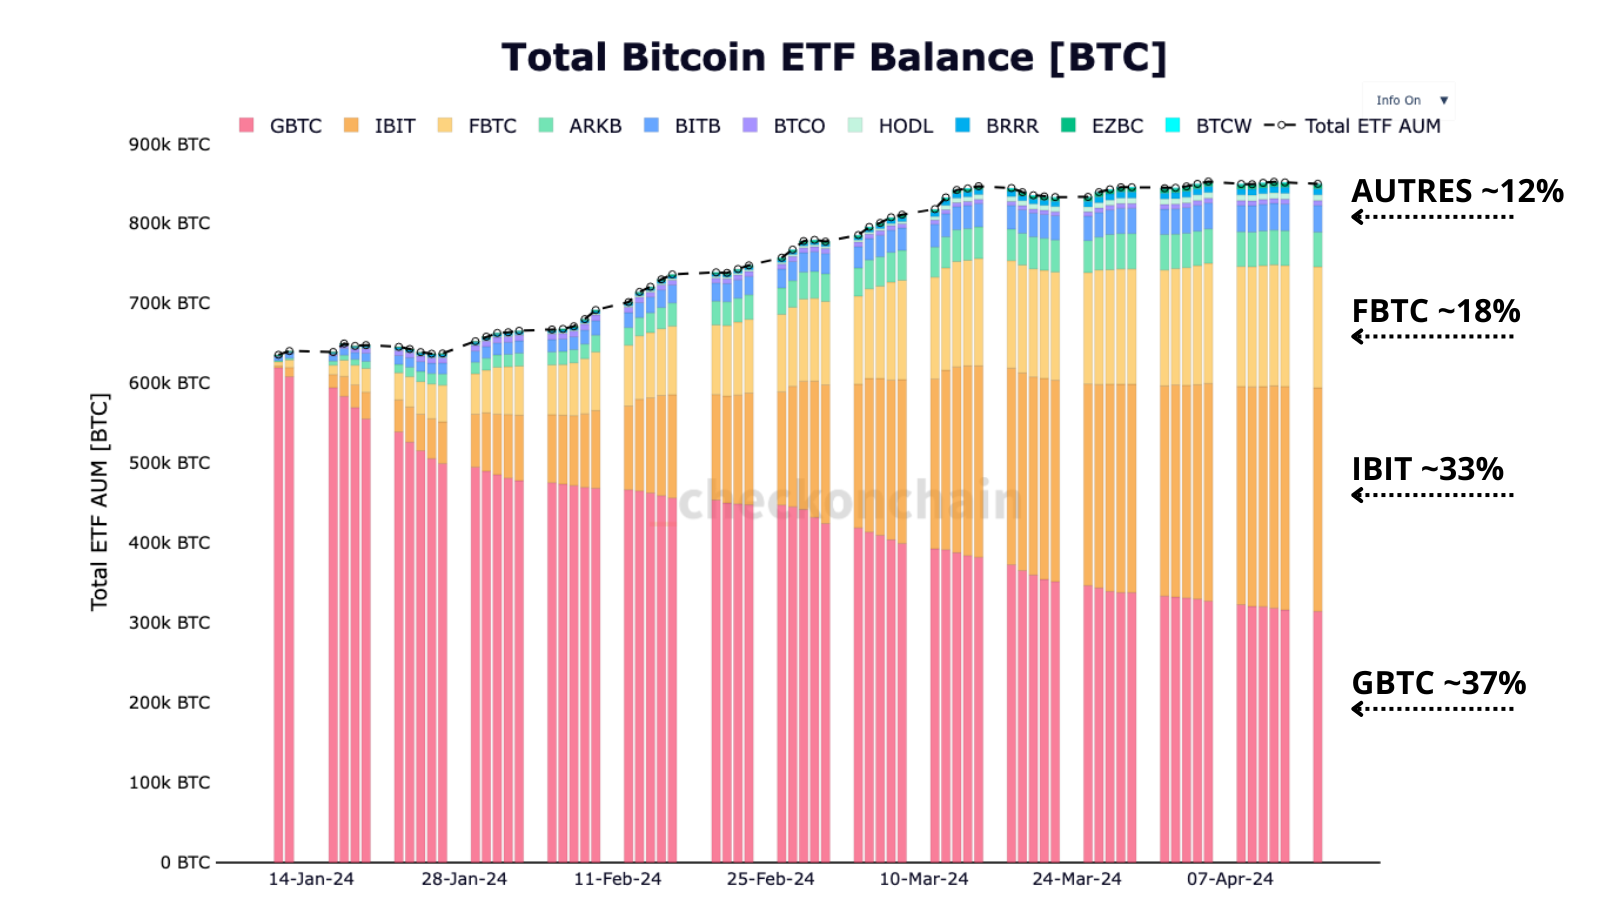 L'image représente la part de marché de chaque ETF (en BTC). On voit que les ETF GBTC détiennent encore 37% de la balance des ETF, contre 33% pour BlackRock et son ETF IBIT